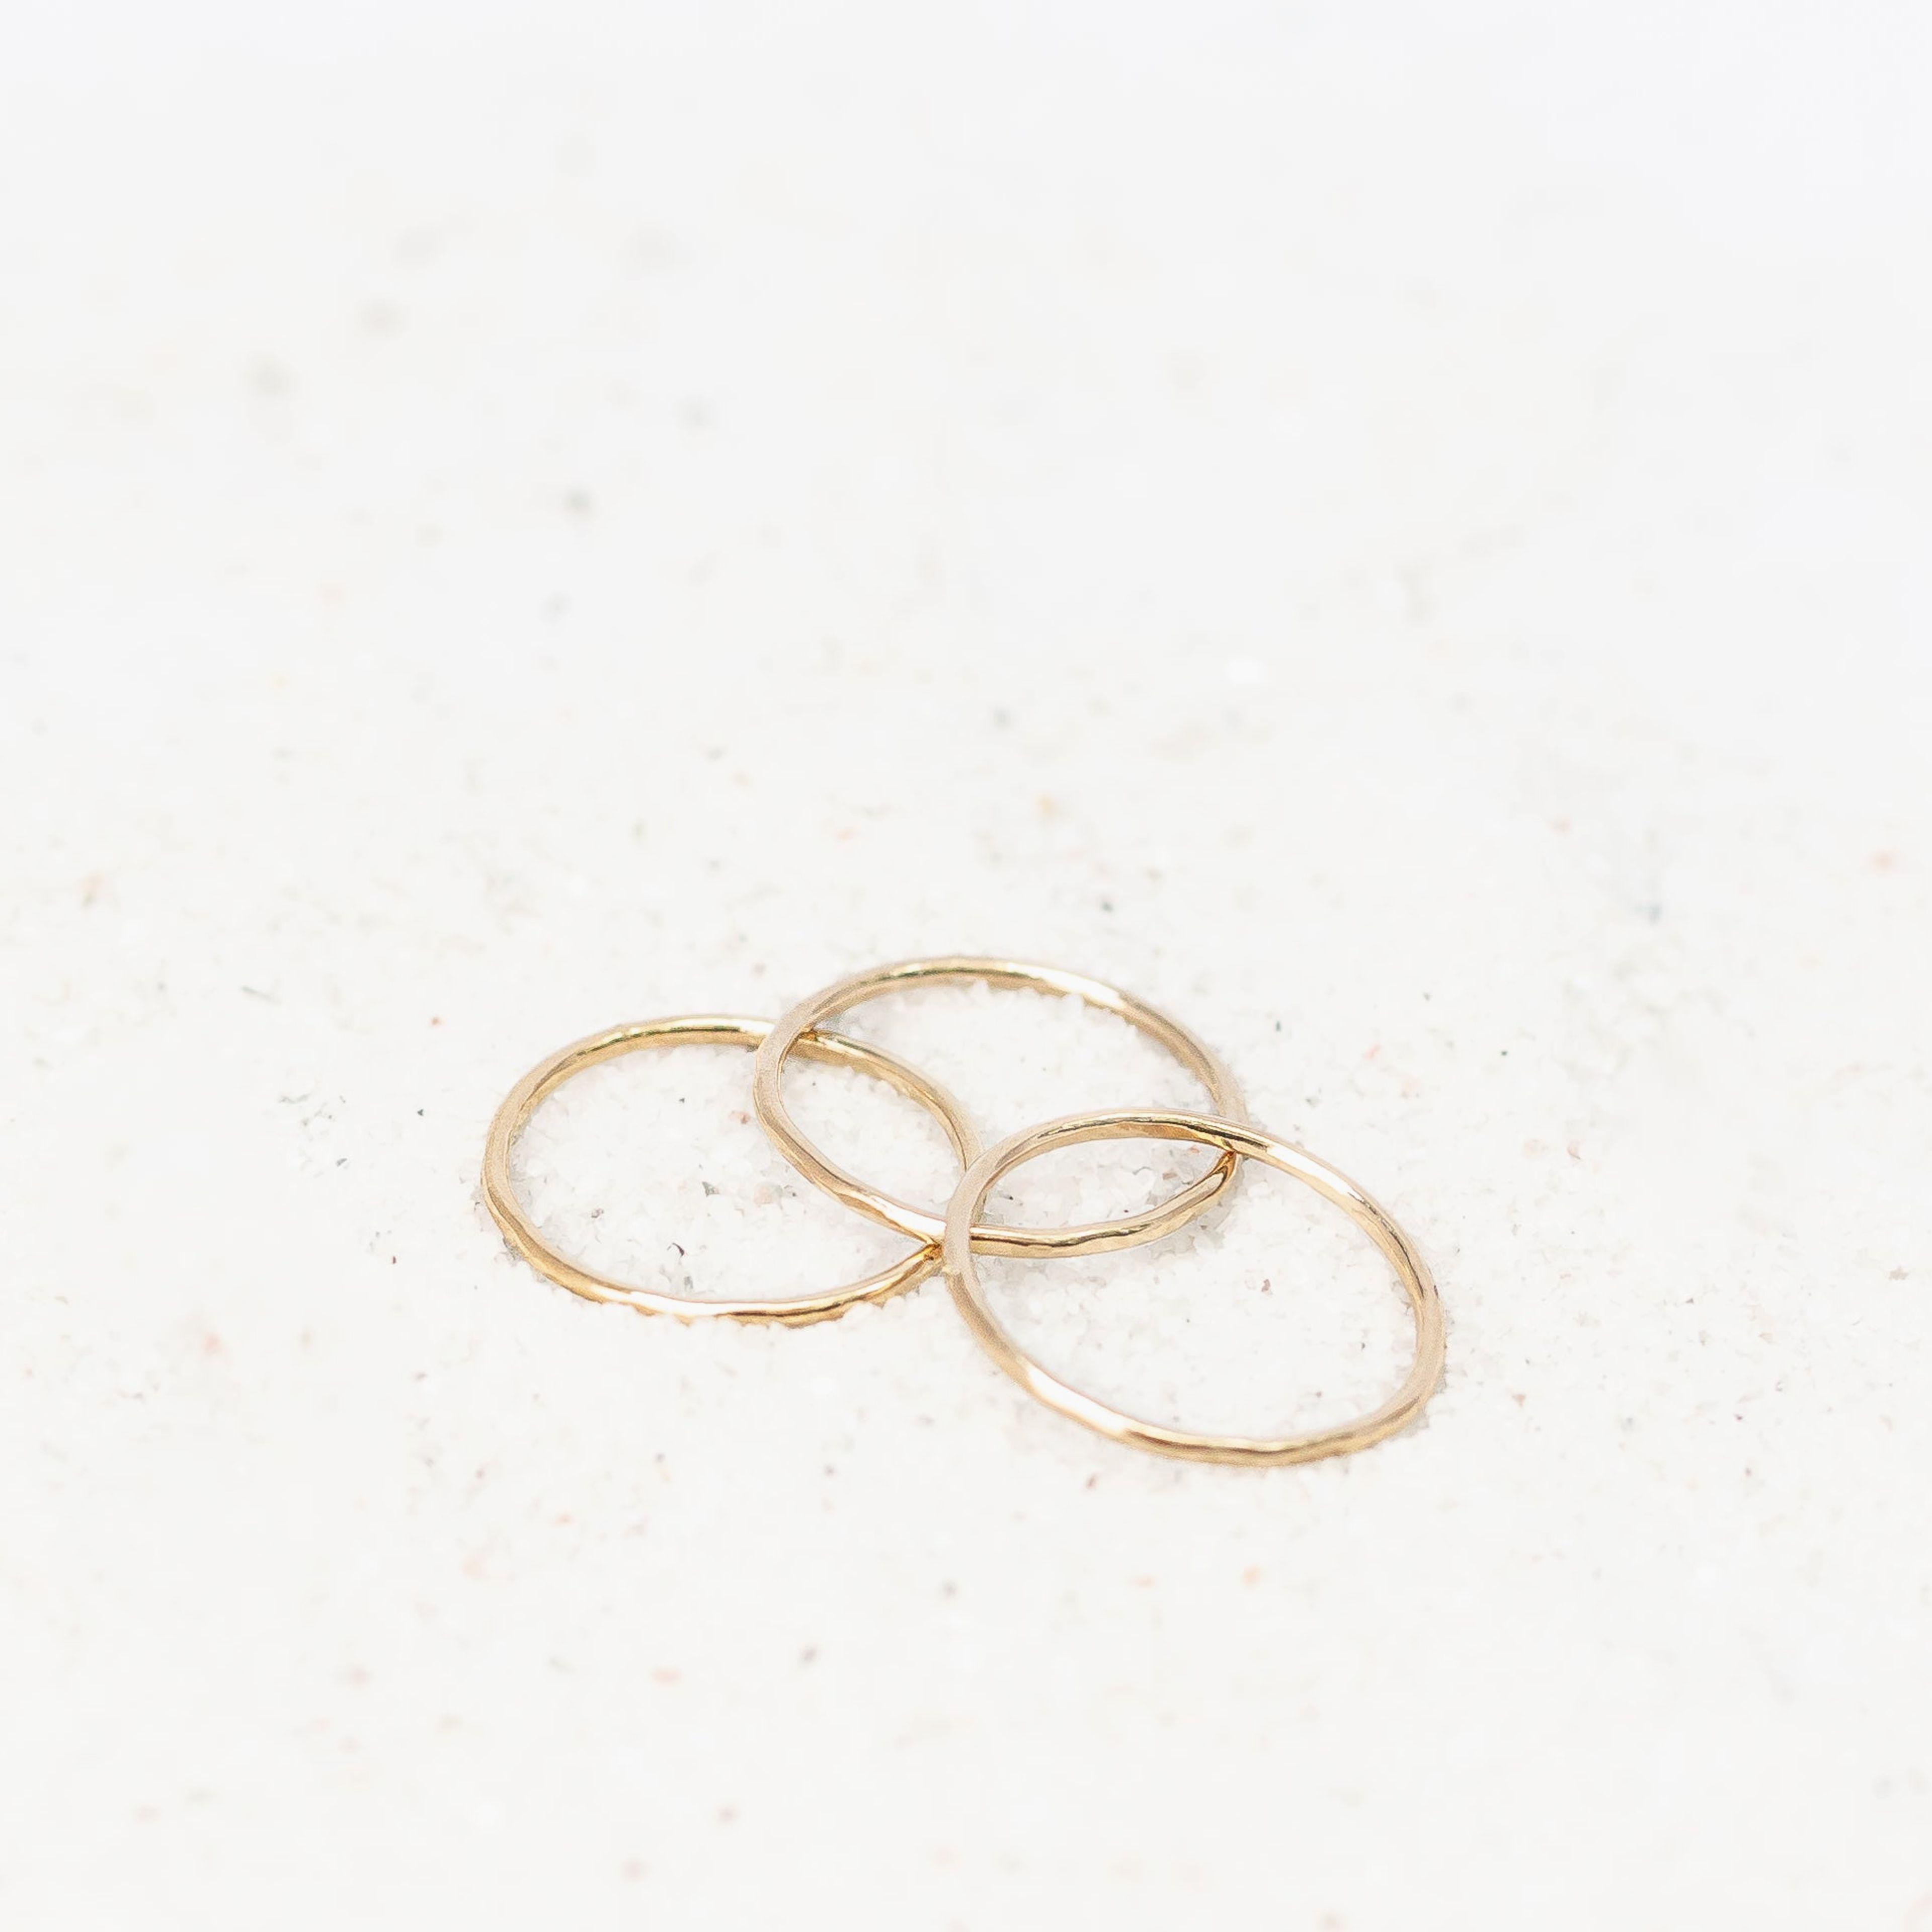 Tiny and Shiny Thin Band Ring